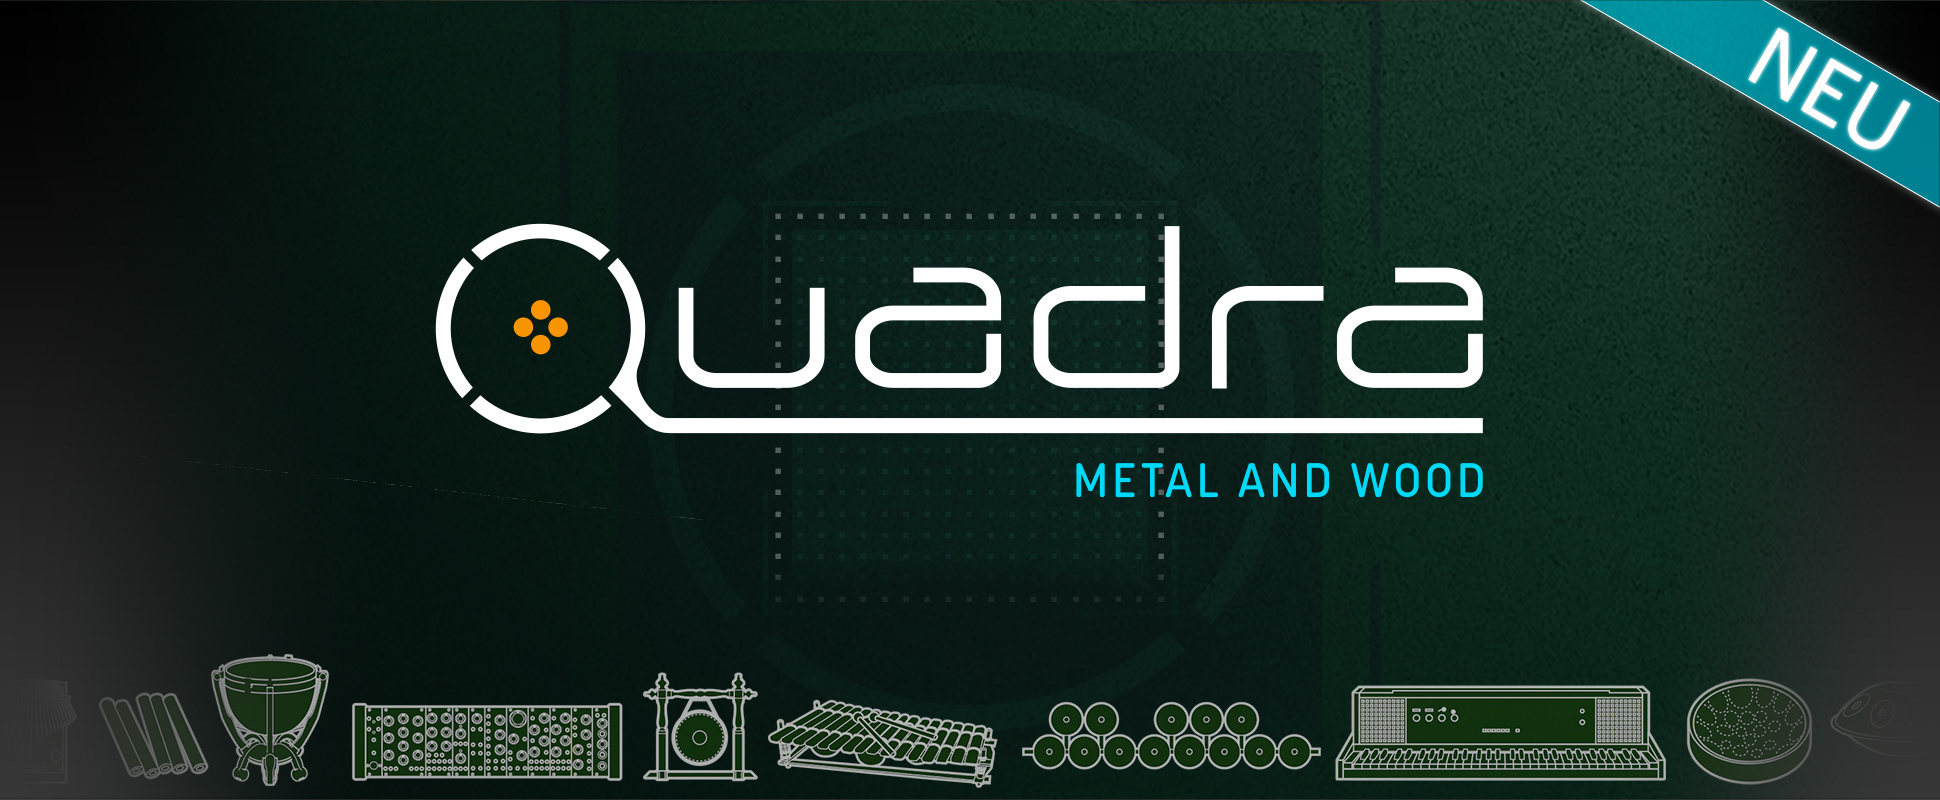 Quadra - Metal and Wood NEW